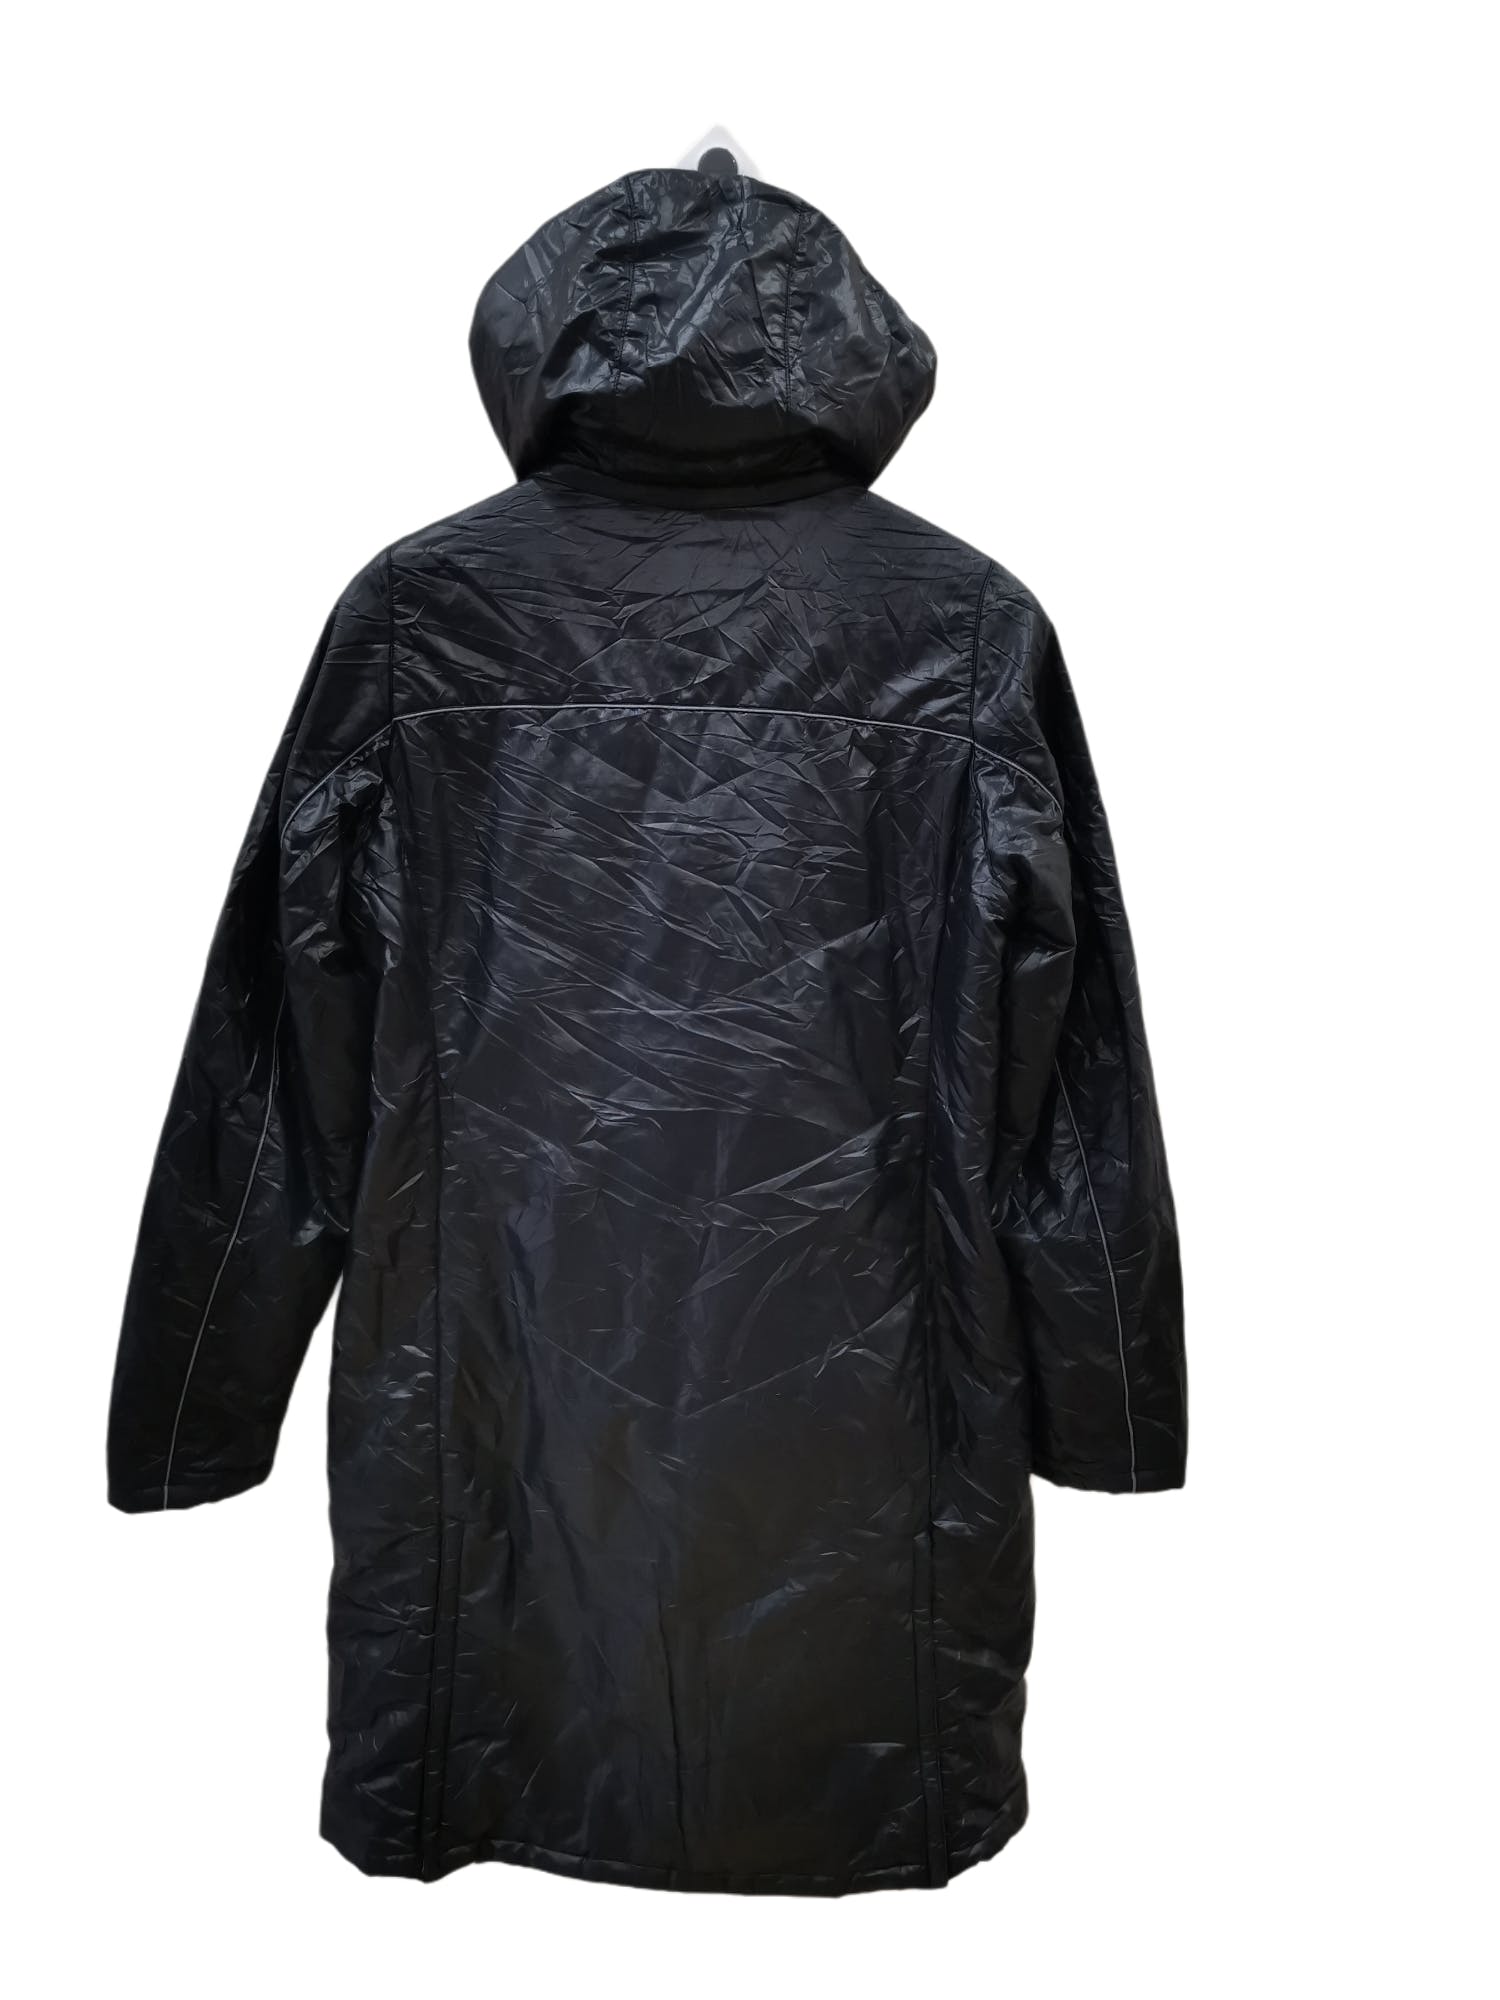 Adidas Long Jacket x Clima365 - 2